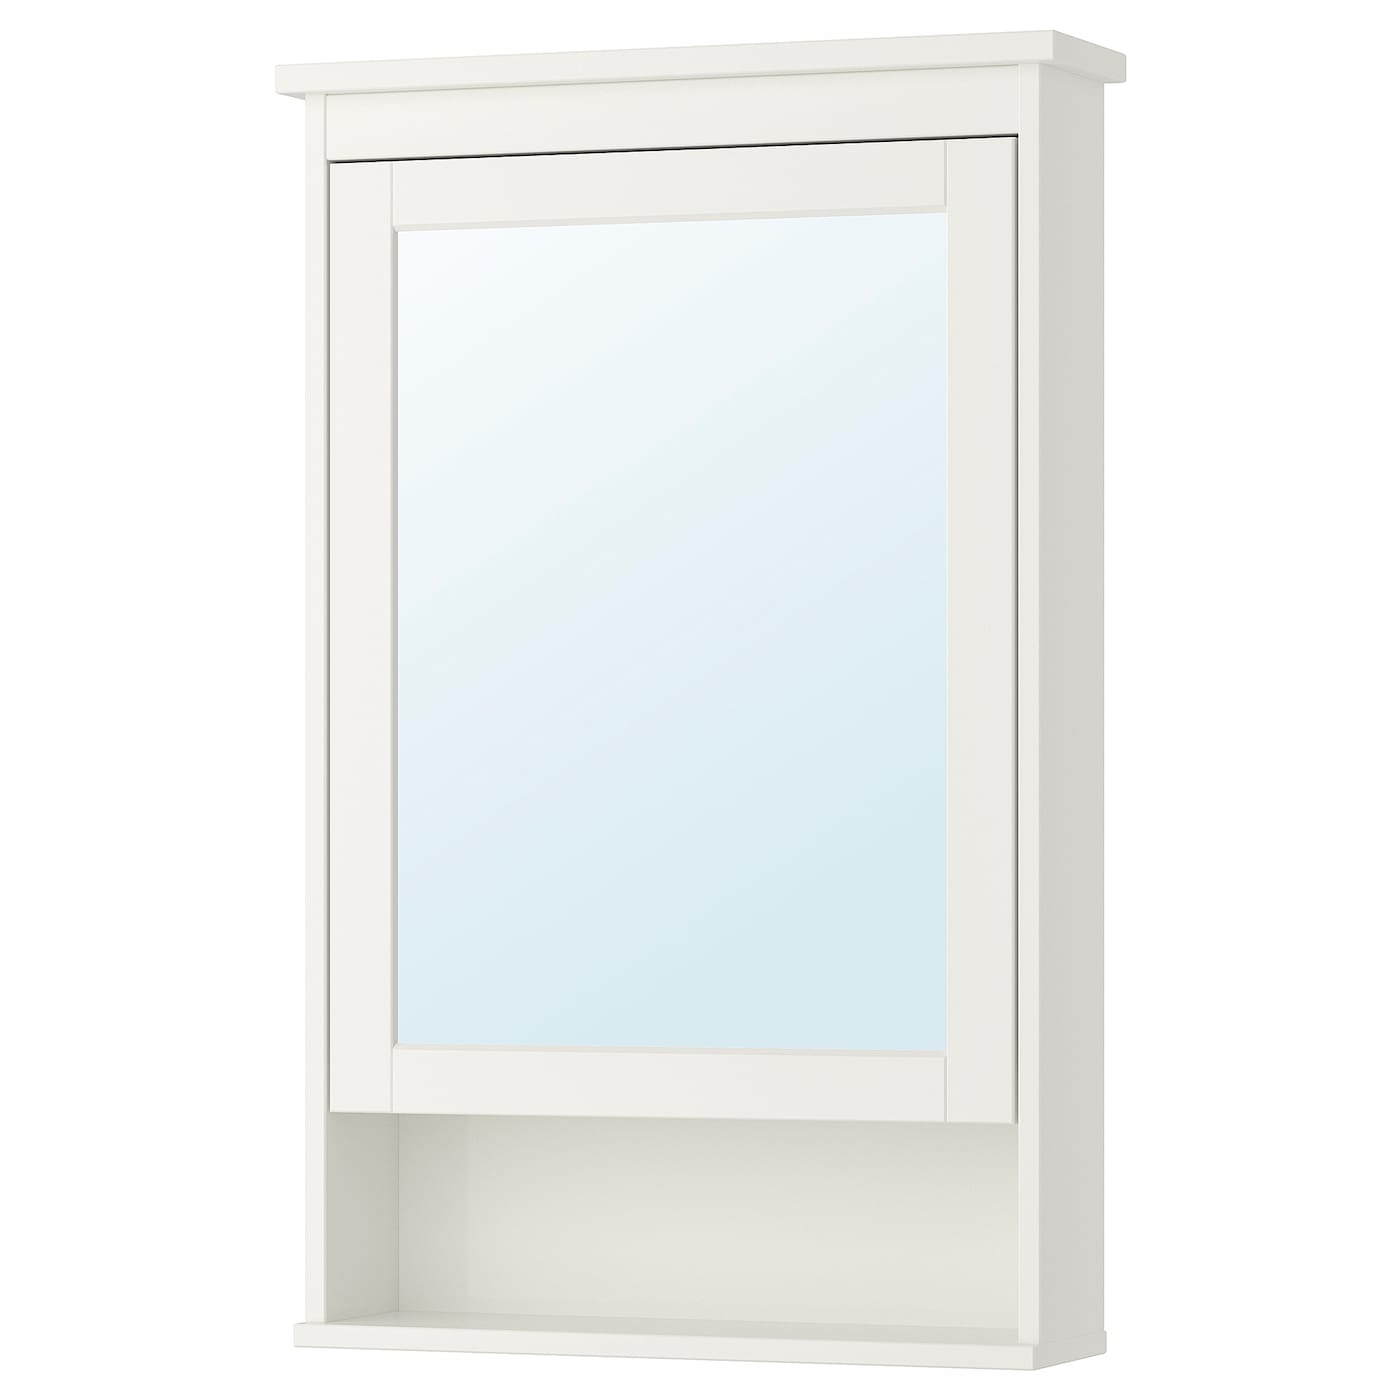 Шкафчик с зеркалом - HEMNES IKEA/ ХЕММНЕС ИКЕА,  63х98 см, белый